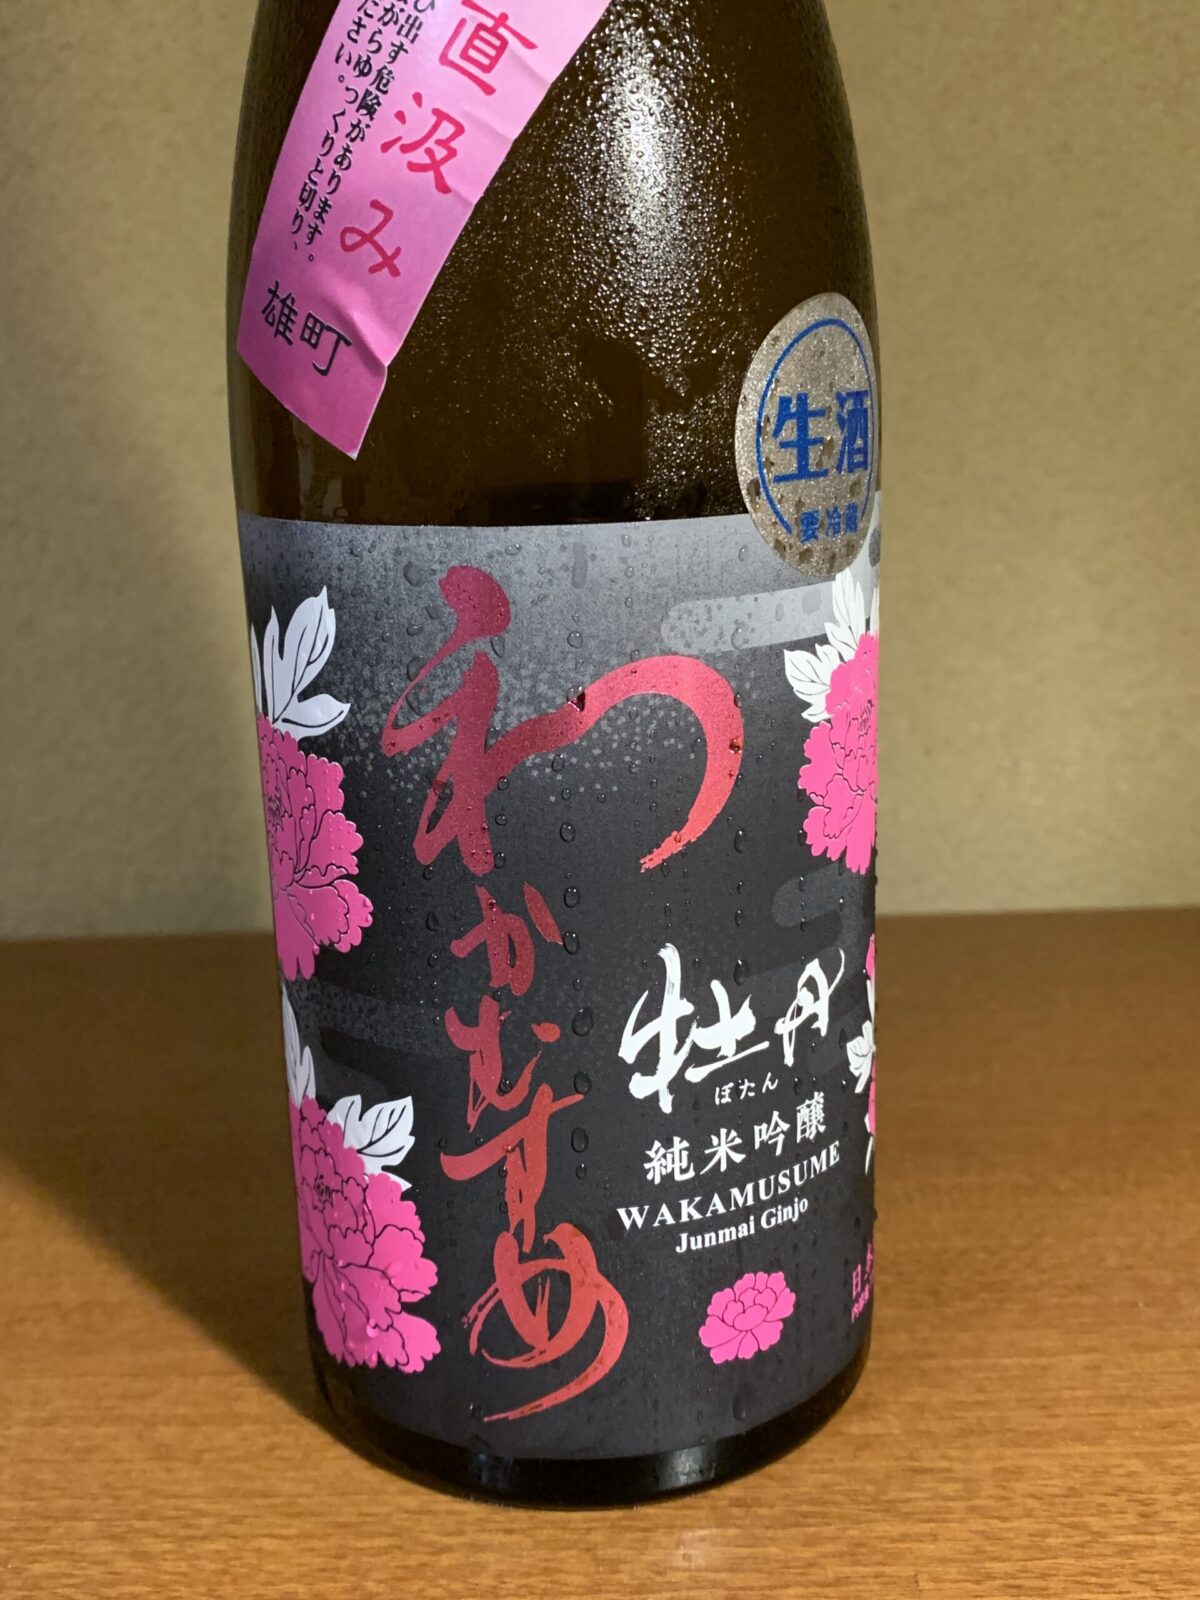 夫婦二人で醸す山口の日本酒『わかむすめ牡丹』はふくよかで上品な味わい